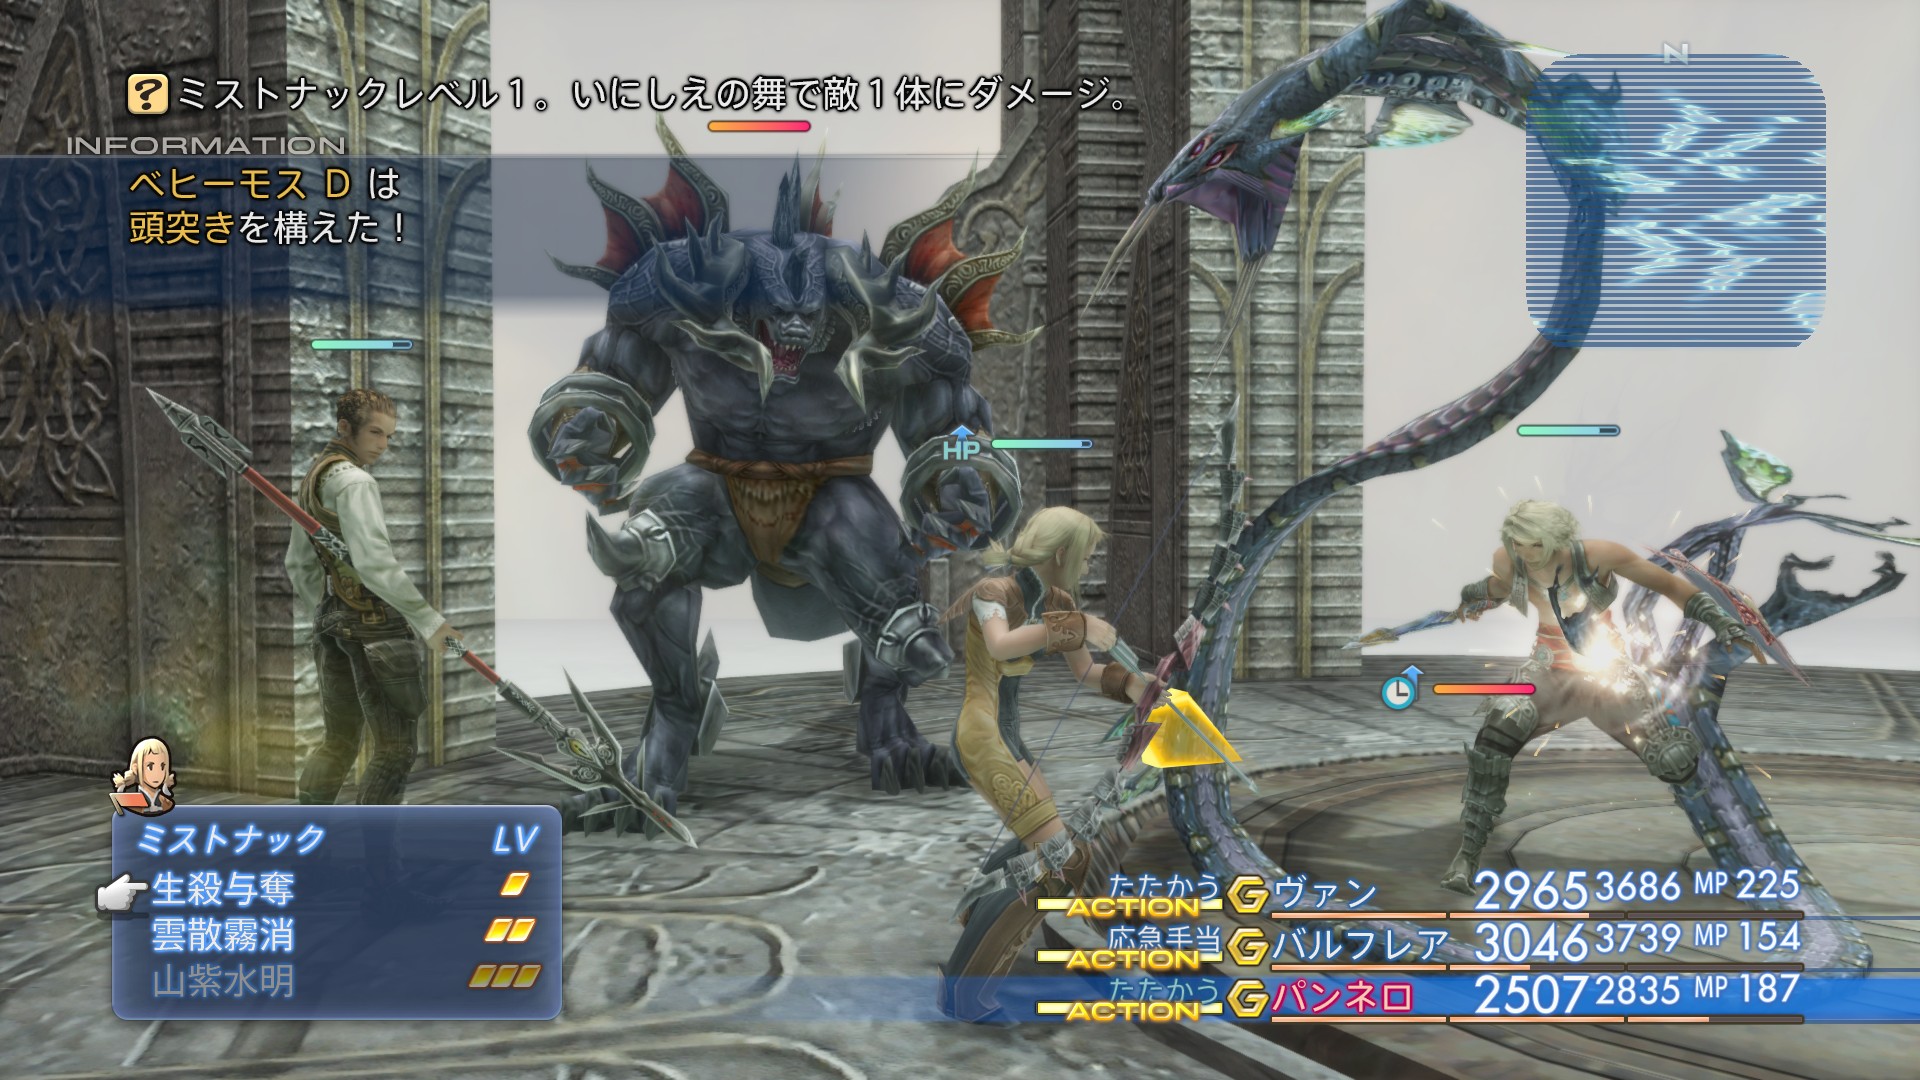 画像集no 001 Final Fantasy Xii The Zodiac Age のやり込み要素モブハントや バトルで活躍するミストナック 召喚獣 を紹介